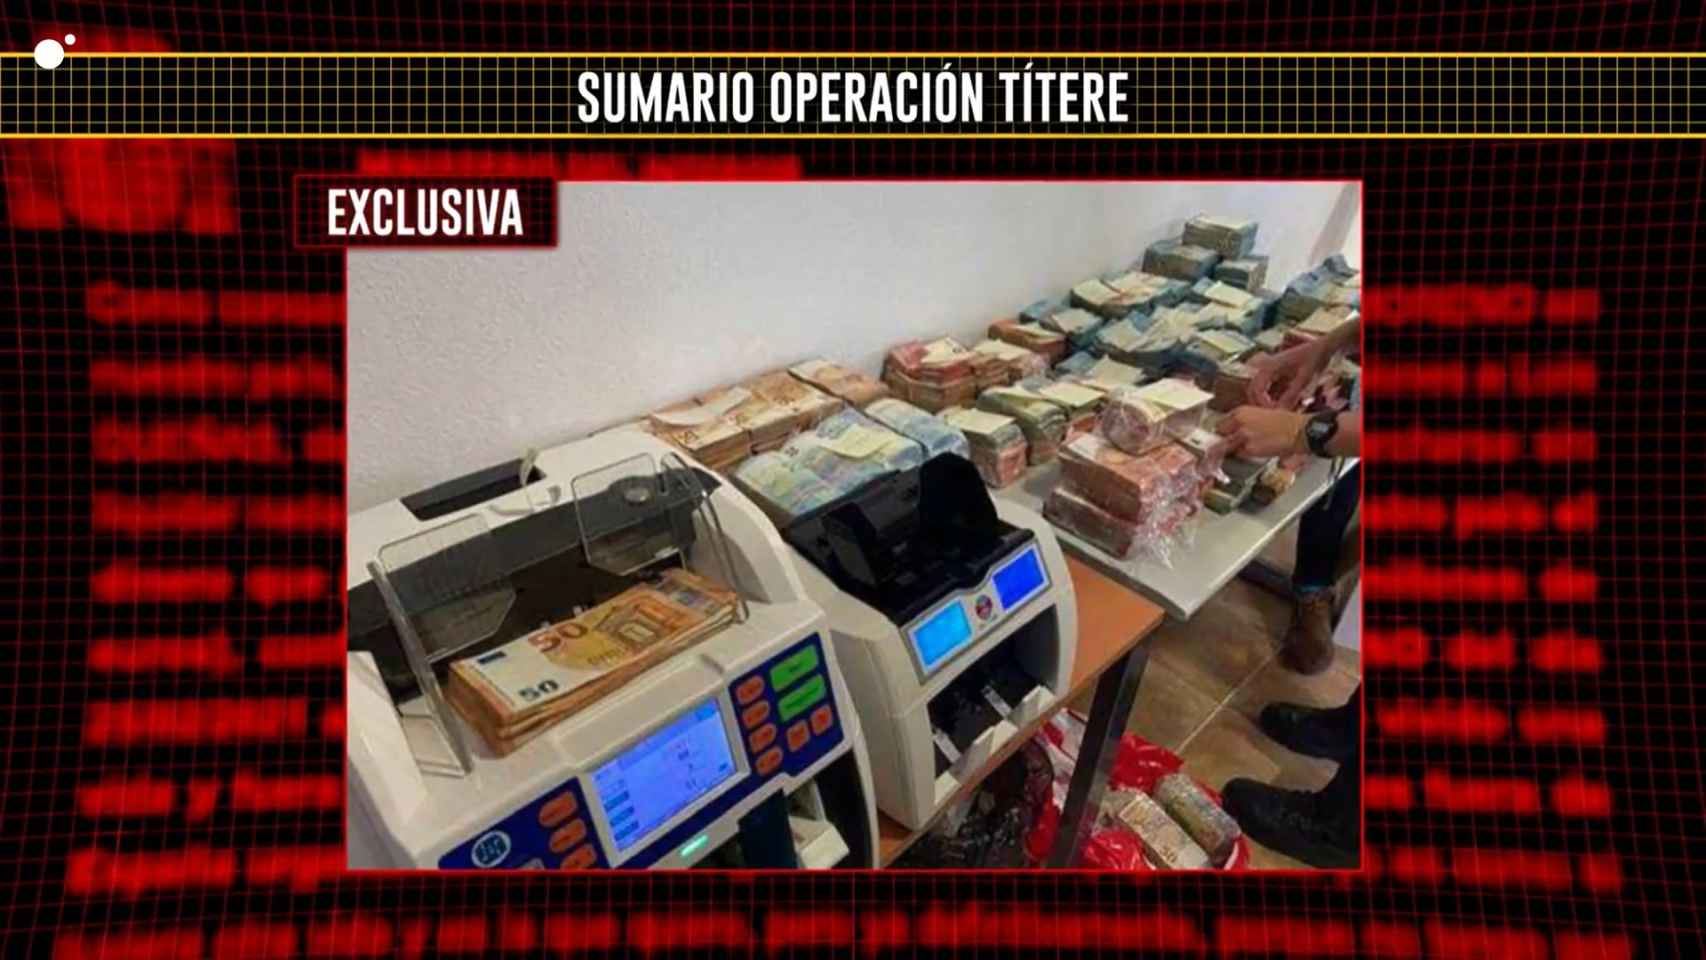 El programa ha mostrado imágenes del dinero incautado por la policía a la organización.